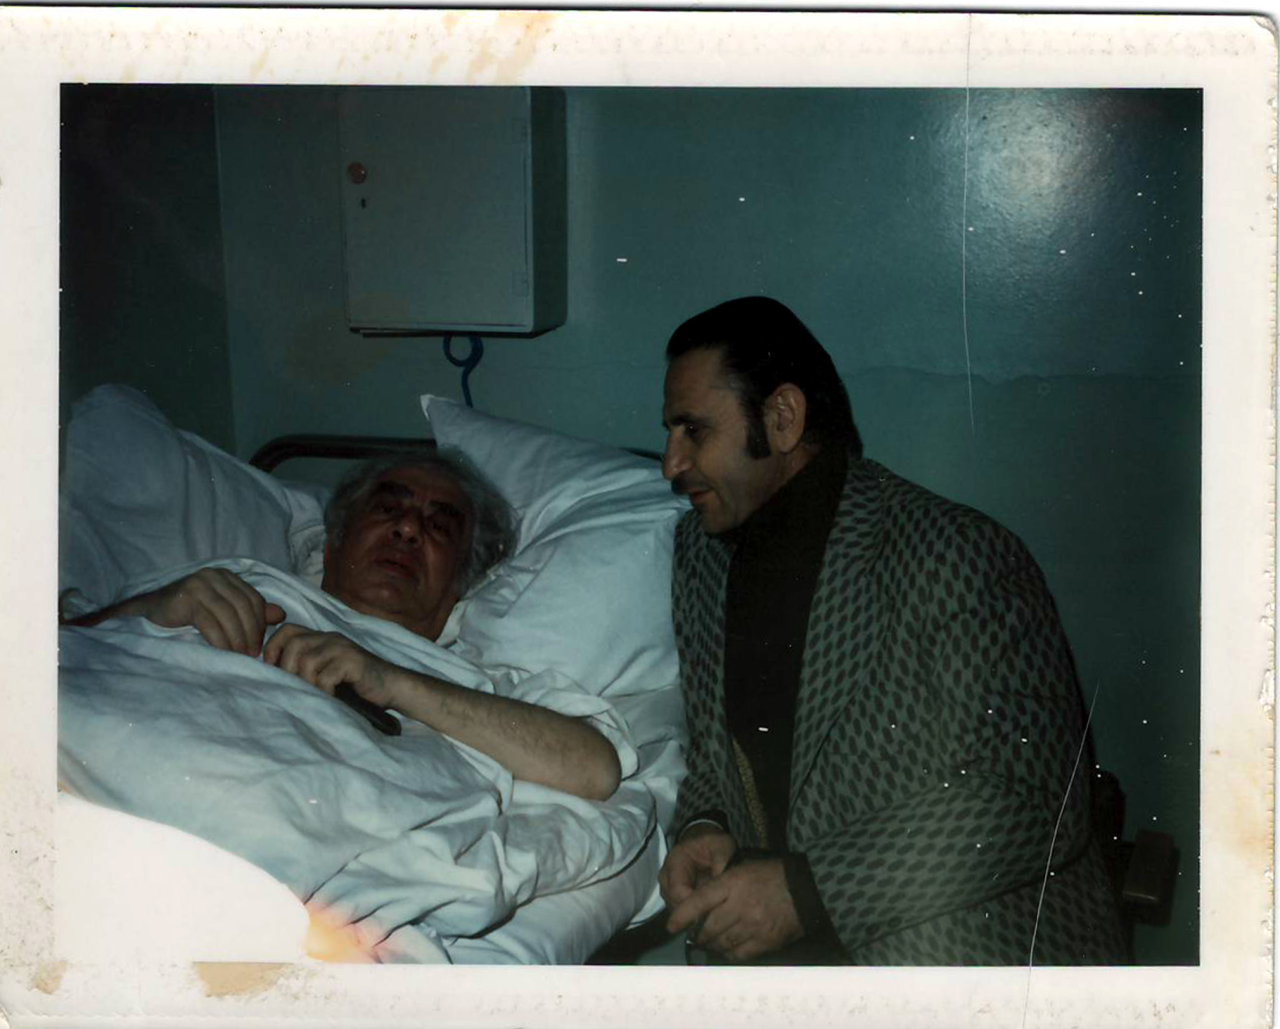 Լուսանկար (գունավոր). Ա. Խաչատրյանը Սիրակ Հովհաննեսի հետ Կրեմլյան հիվանդանոցում՝ վիրհատությունից հետո